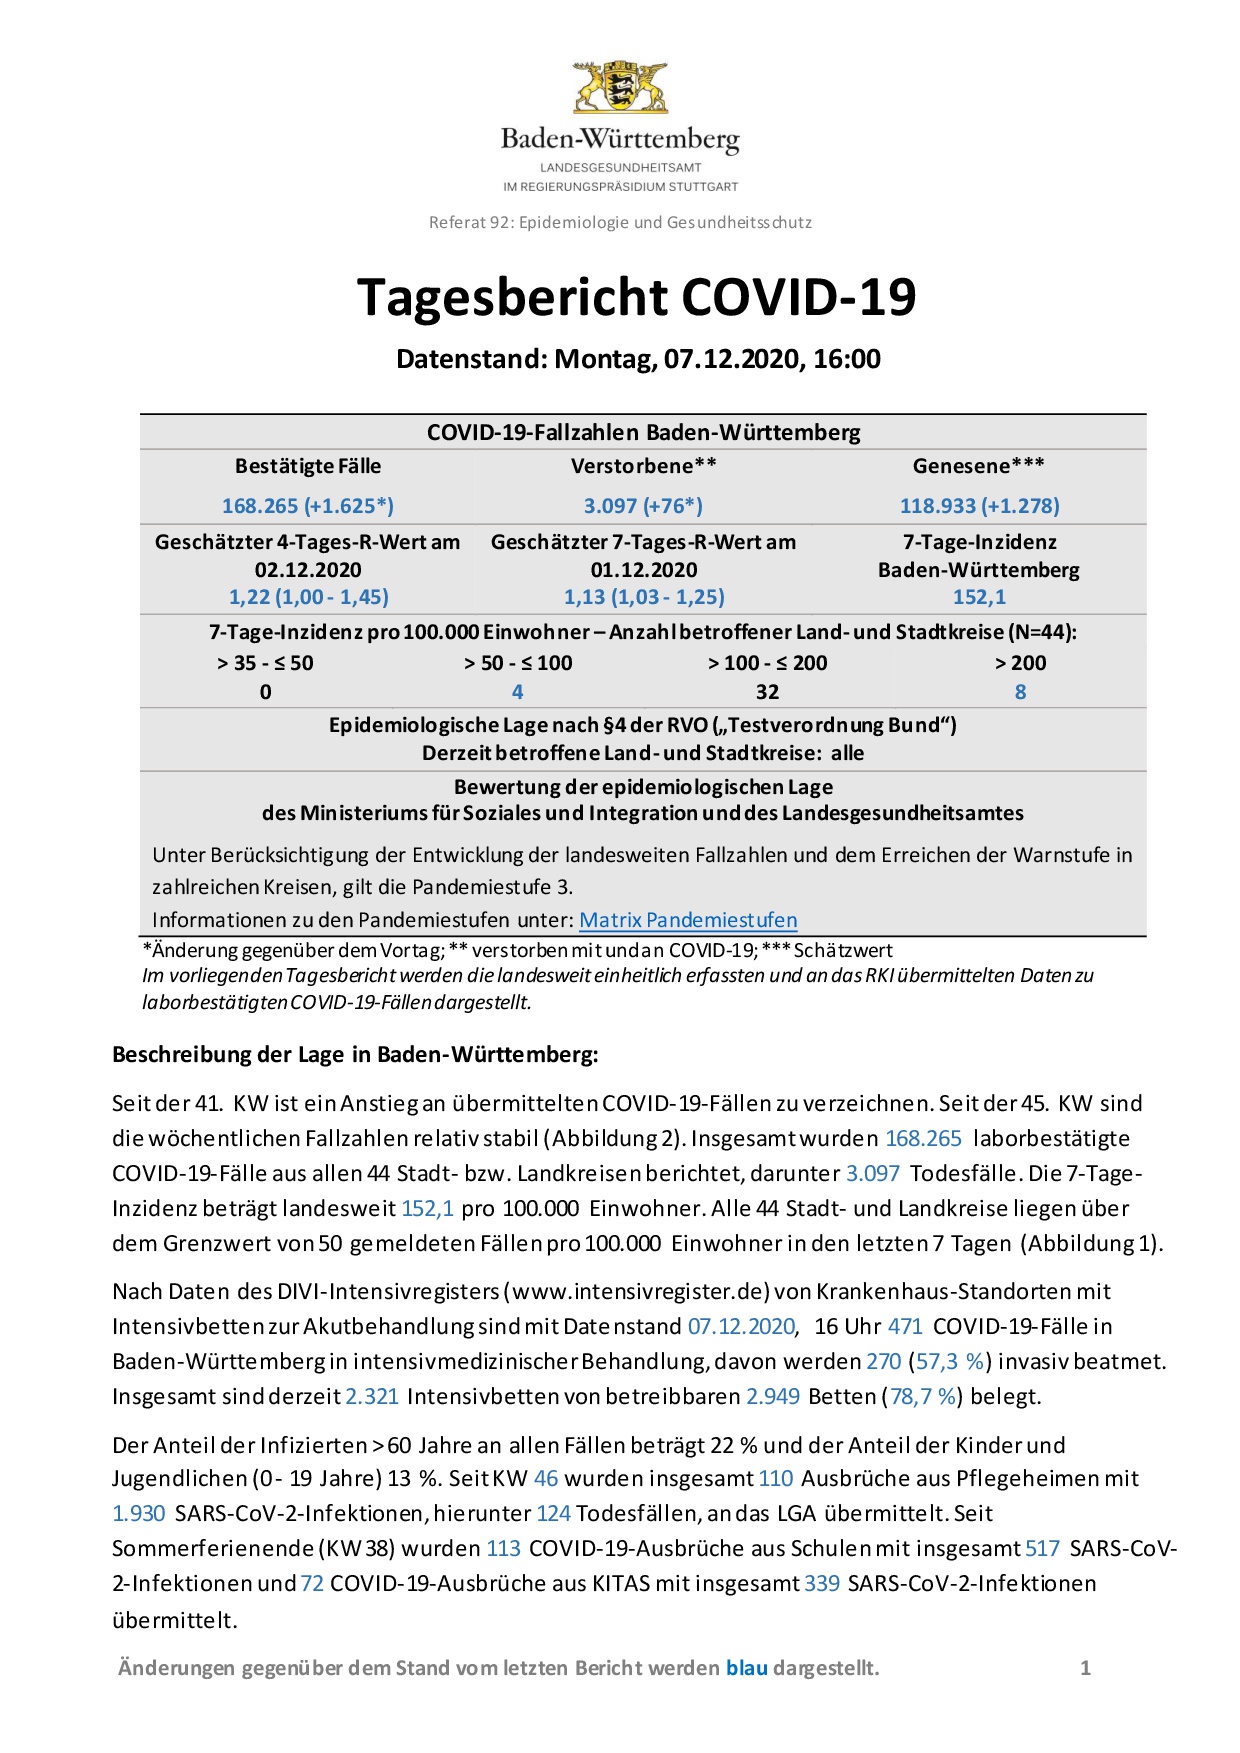 COVID-19 Tagesbericht (07.12.2020) des Landesgesundheitsamts Baden-Württemberg – (ausführlicher)